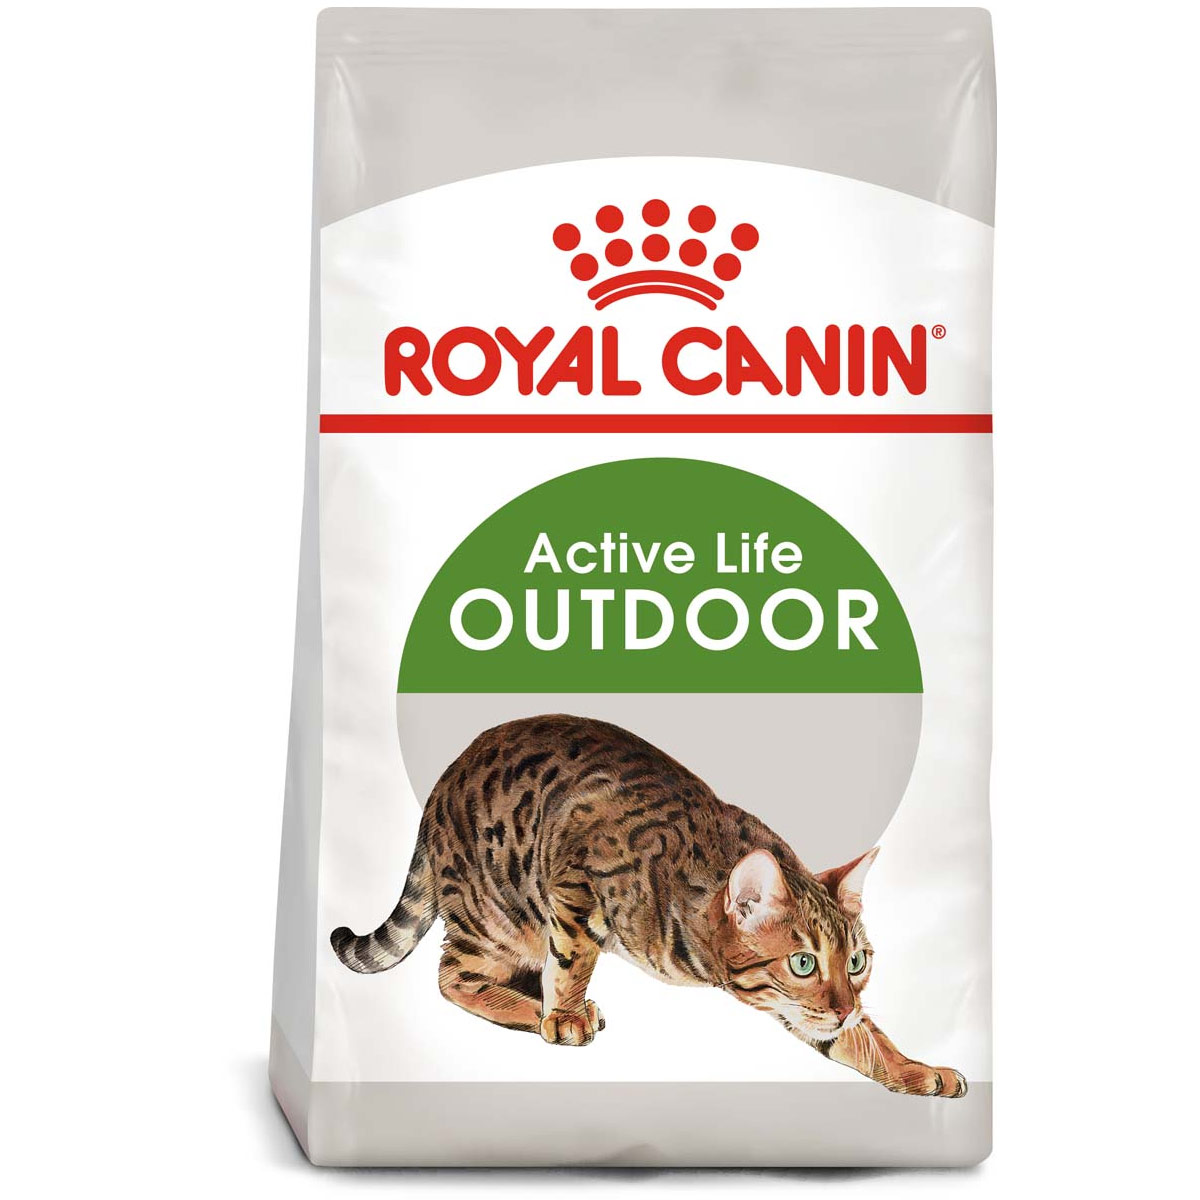 ROYAL CANIN OUTDOOR granule pro venkovní kočky 10 kg